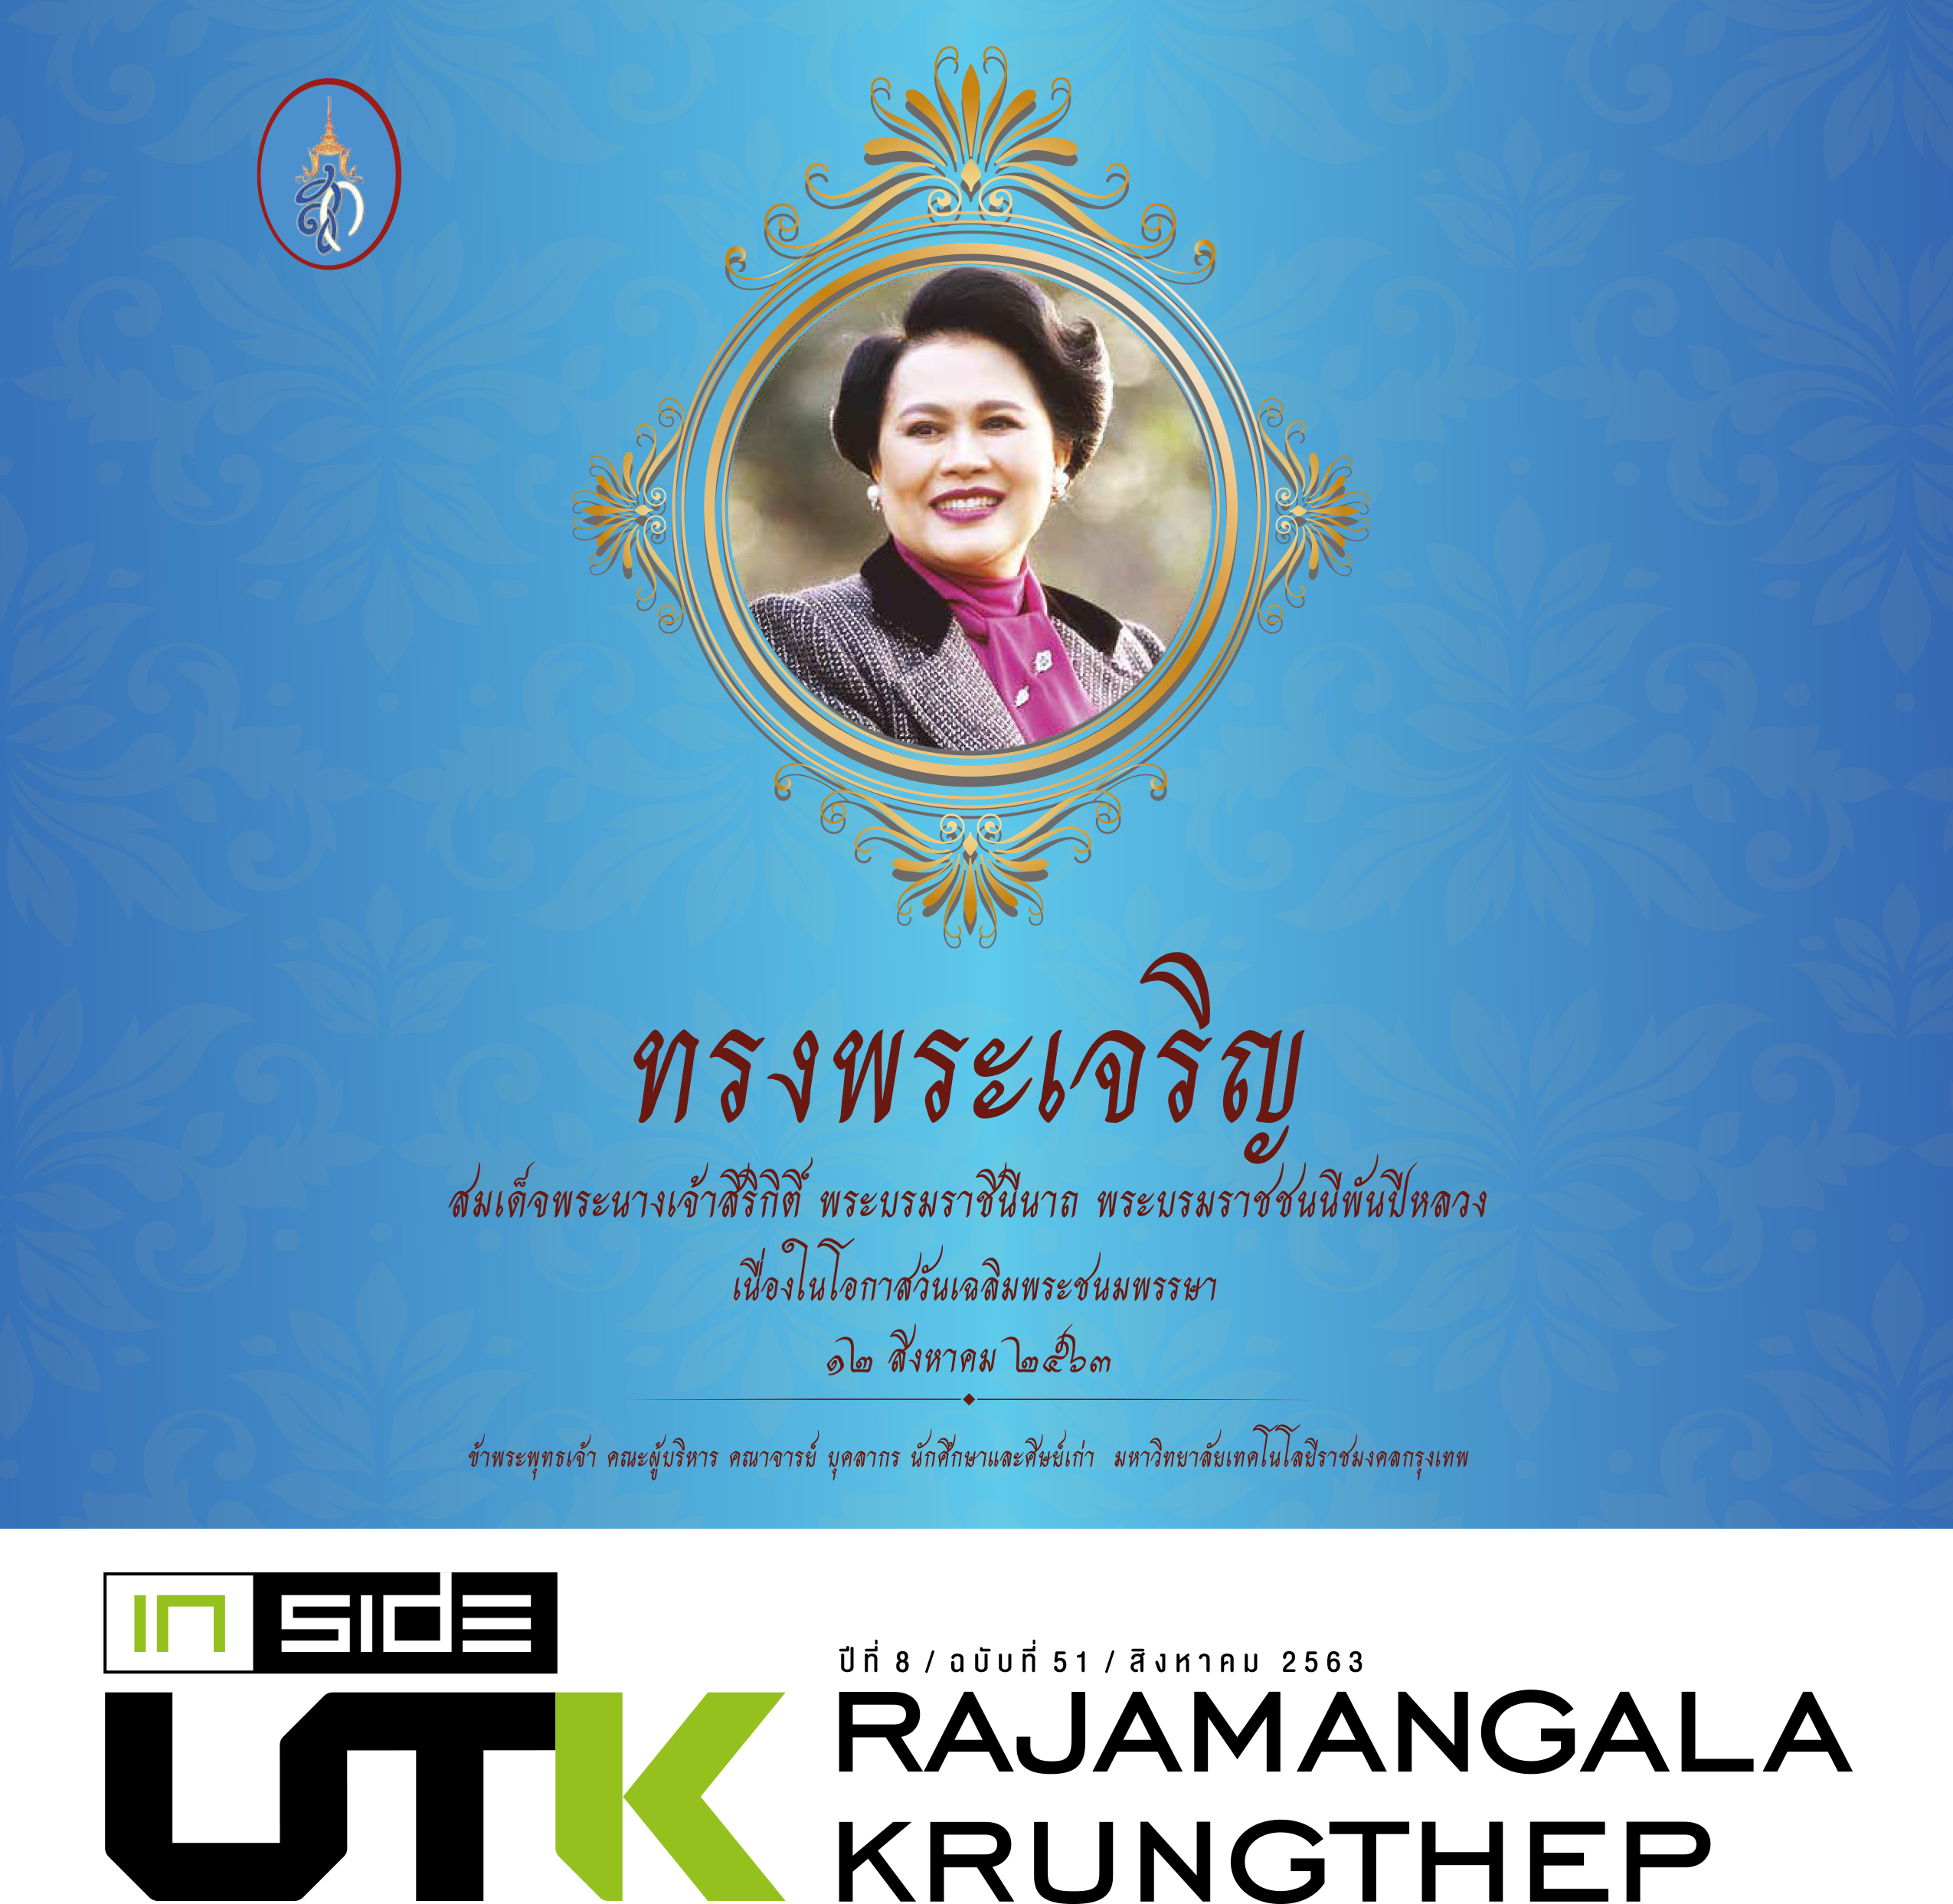 จุลสาร Inside UTK Rajamangala Krungthep ปีที่ 8 ฉบับที่ 51 ประจำเดือนสิงหาคมคม 2563